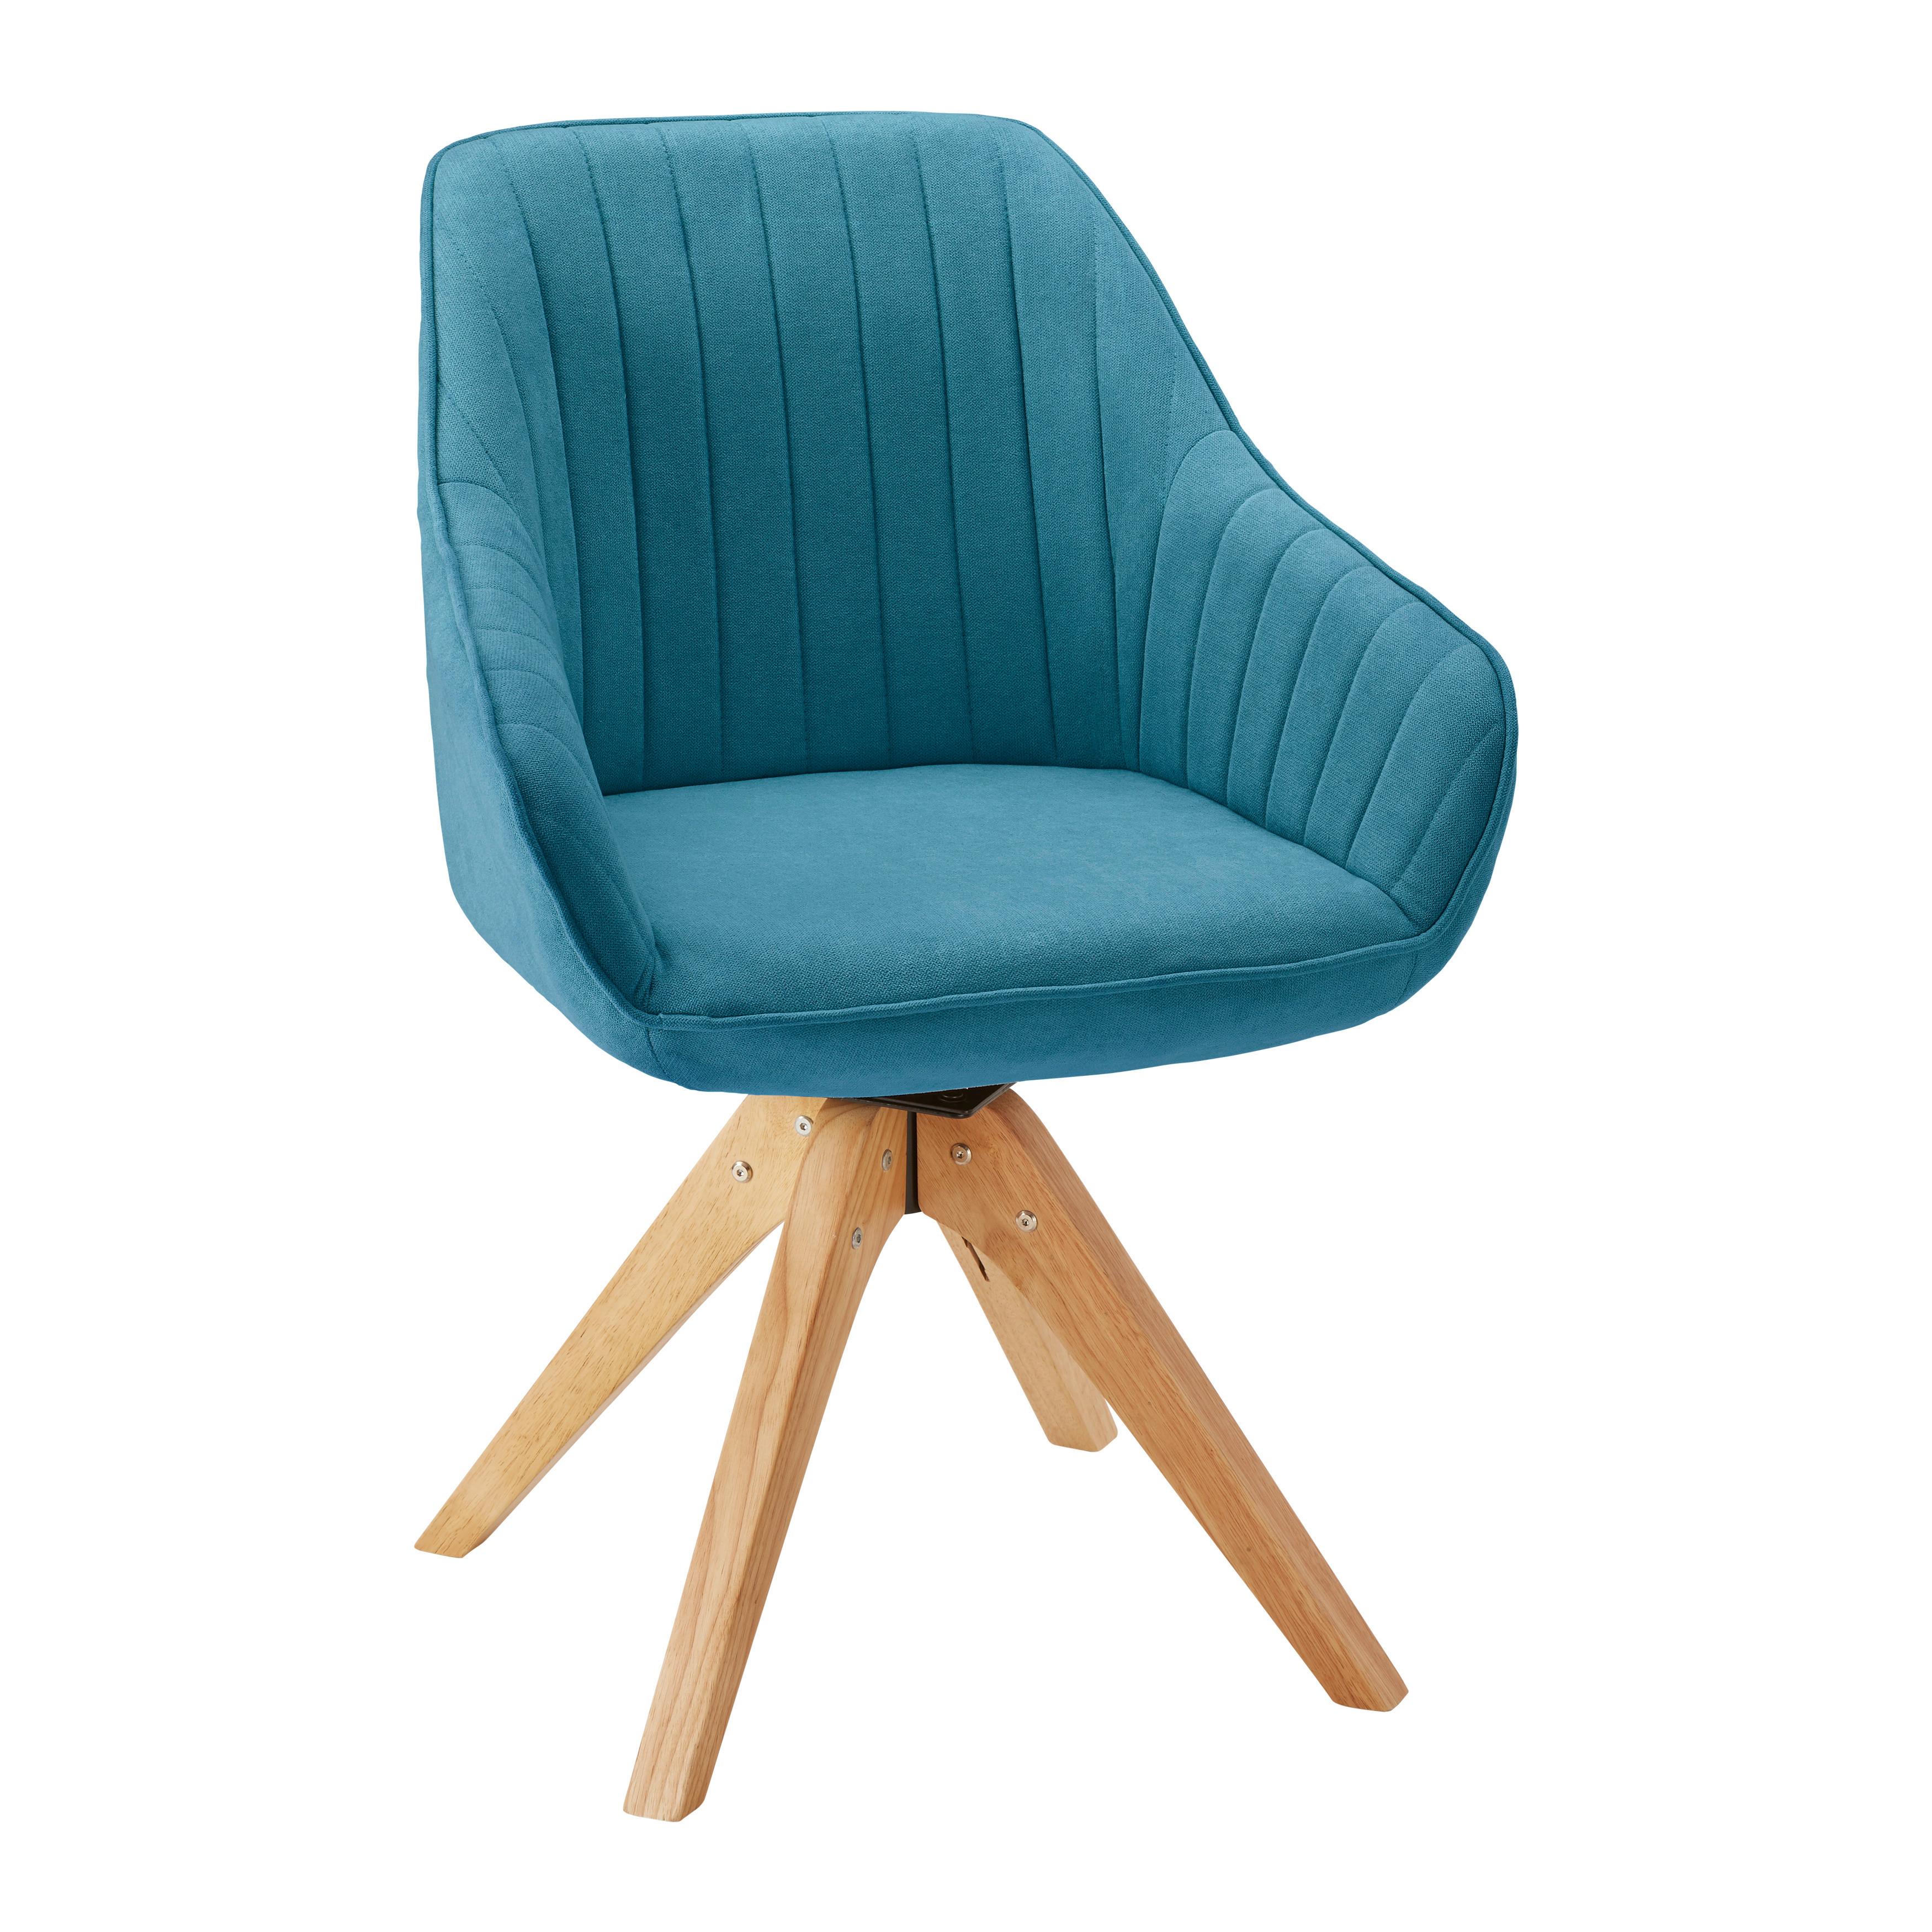 Jídelní Židle Leonie Petrolejová - petrolej/barvy dubu, Moderní, dřevo/textil (60/84/61cm) - Modern Living